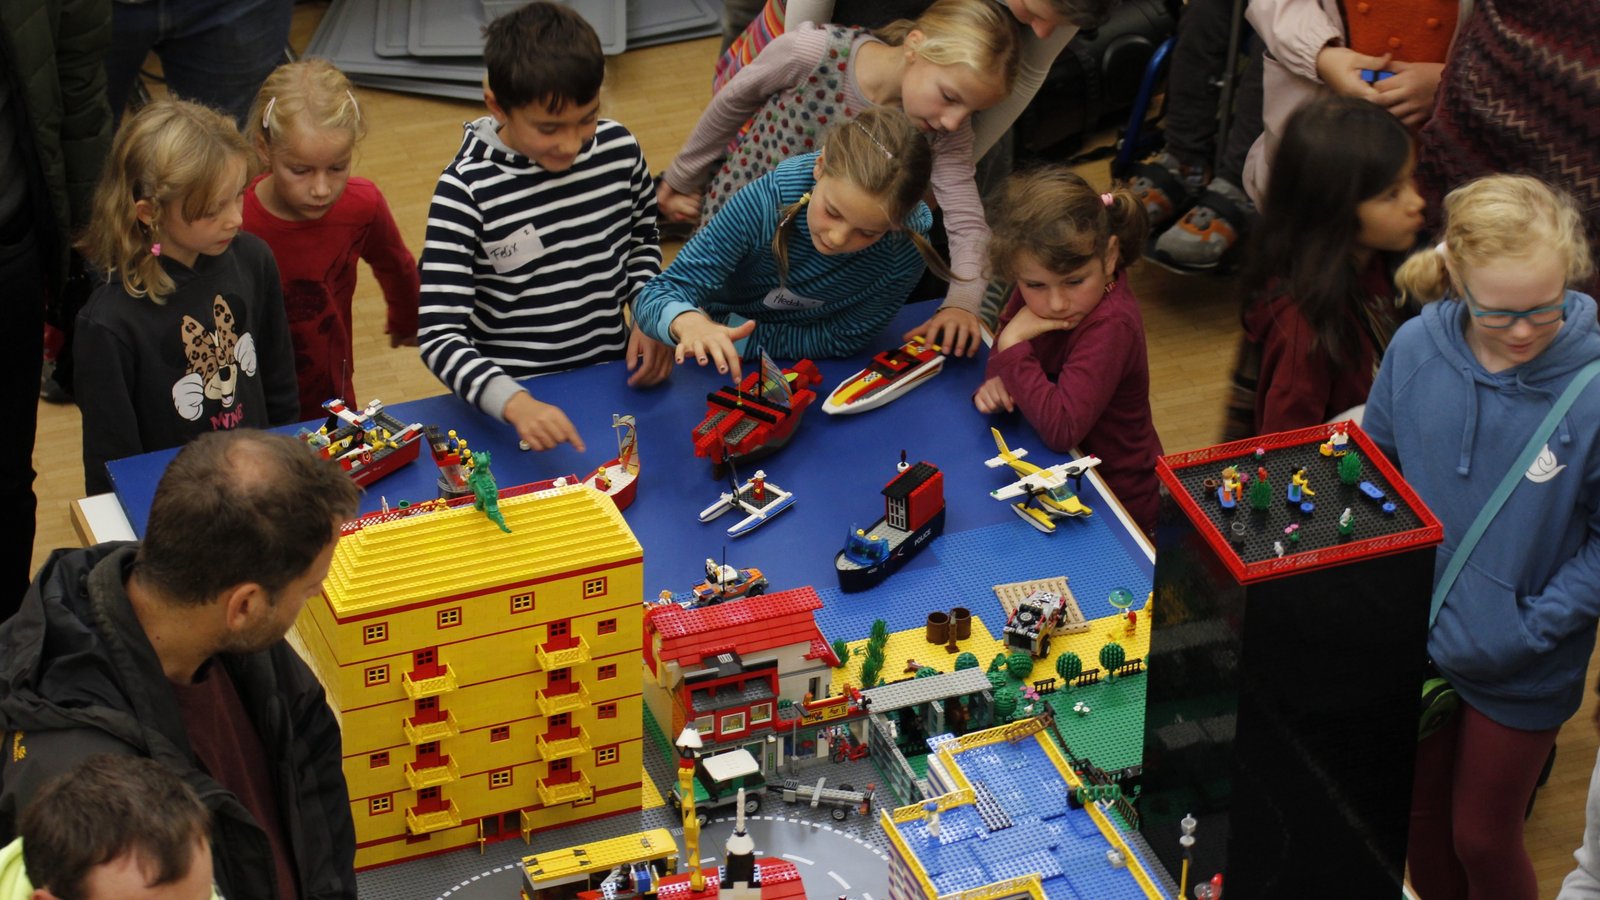 Tausende Lego-Steine wurden im evangelischen Gemeindezentrum in Sersheim verbaut. Foto: p